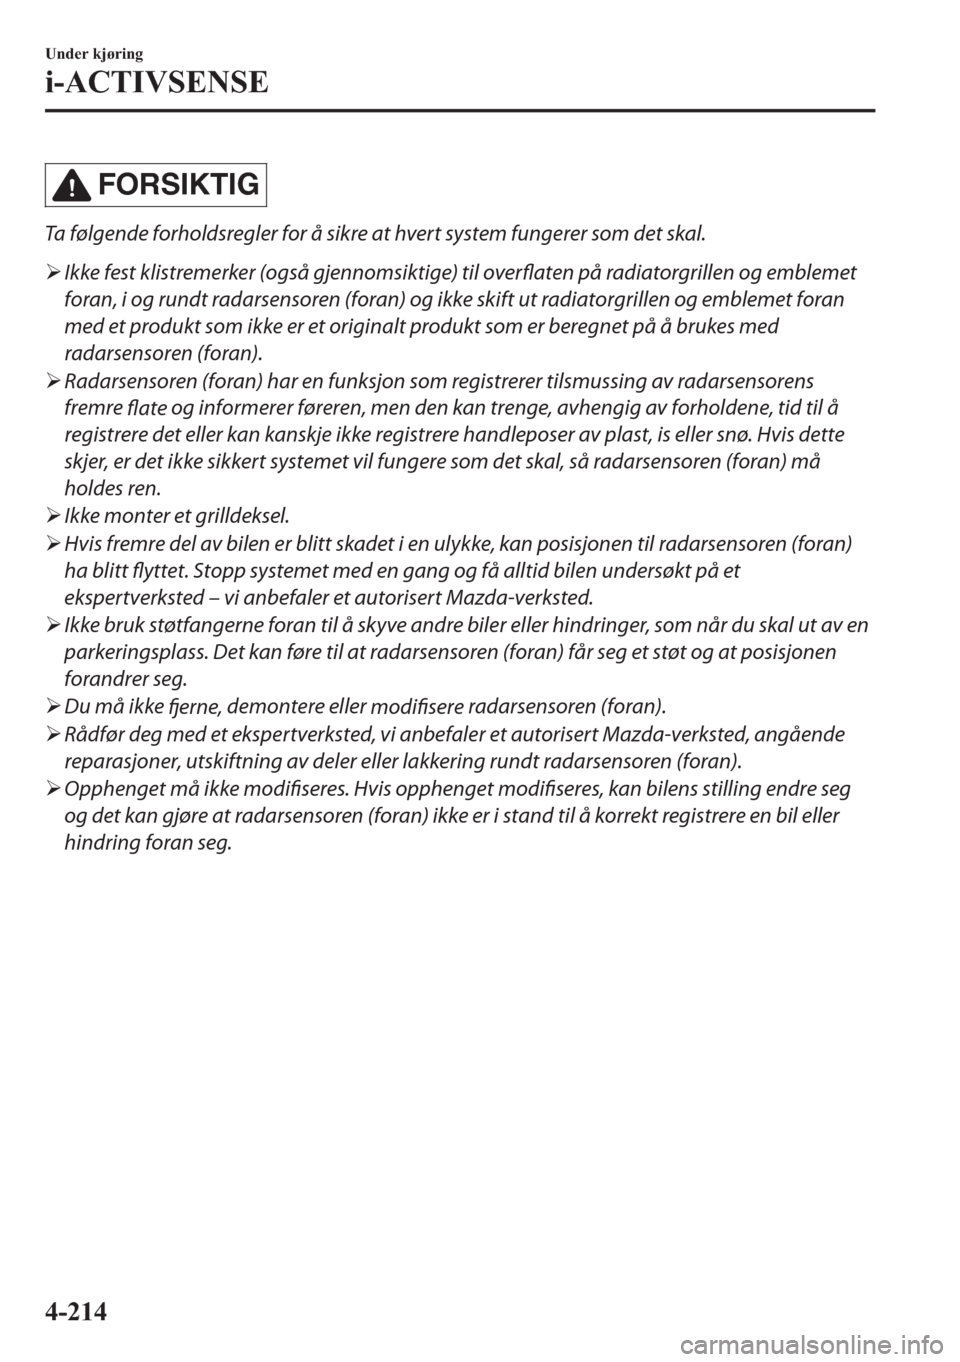 MAZDA MODEL 2 2019  Brukerhåndbok (in Norwegian) FORSIKTIG
Ta følgende forholdsregler for å sikre at hvert system fungerer som det skal.
�¾Ikke fest klistremerker (også gjennomsiktige) til overflaten på radiatorgrillen og emblemet
foran, i og r